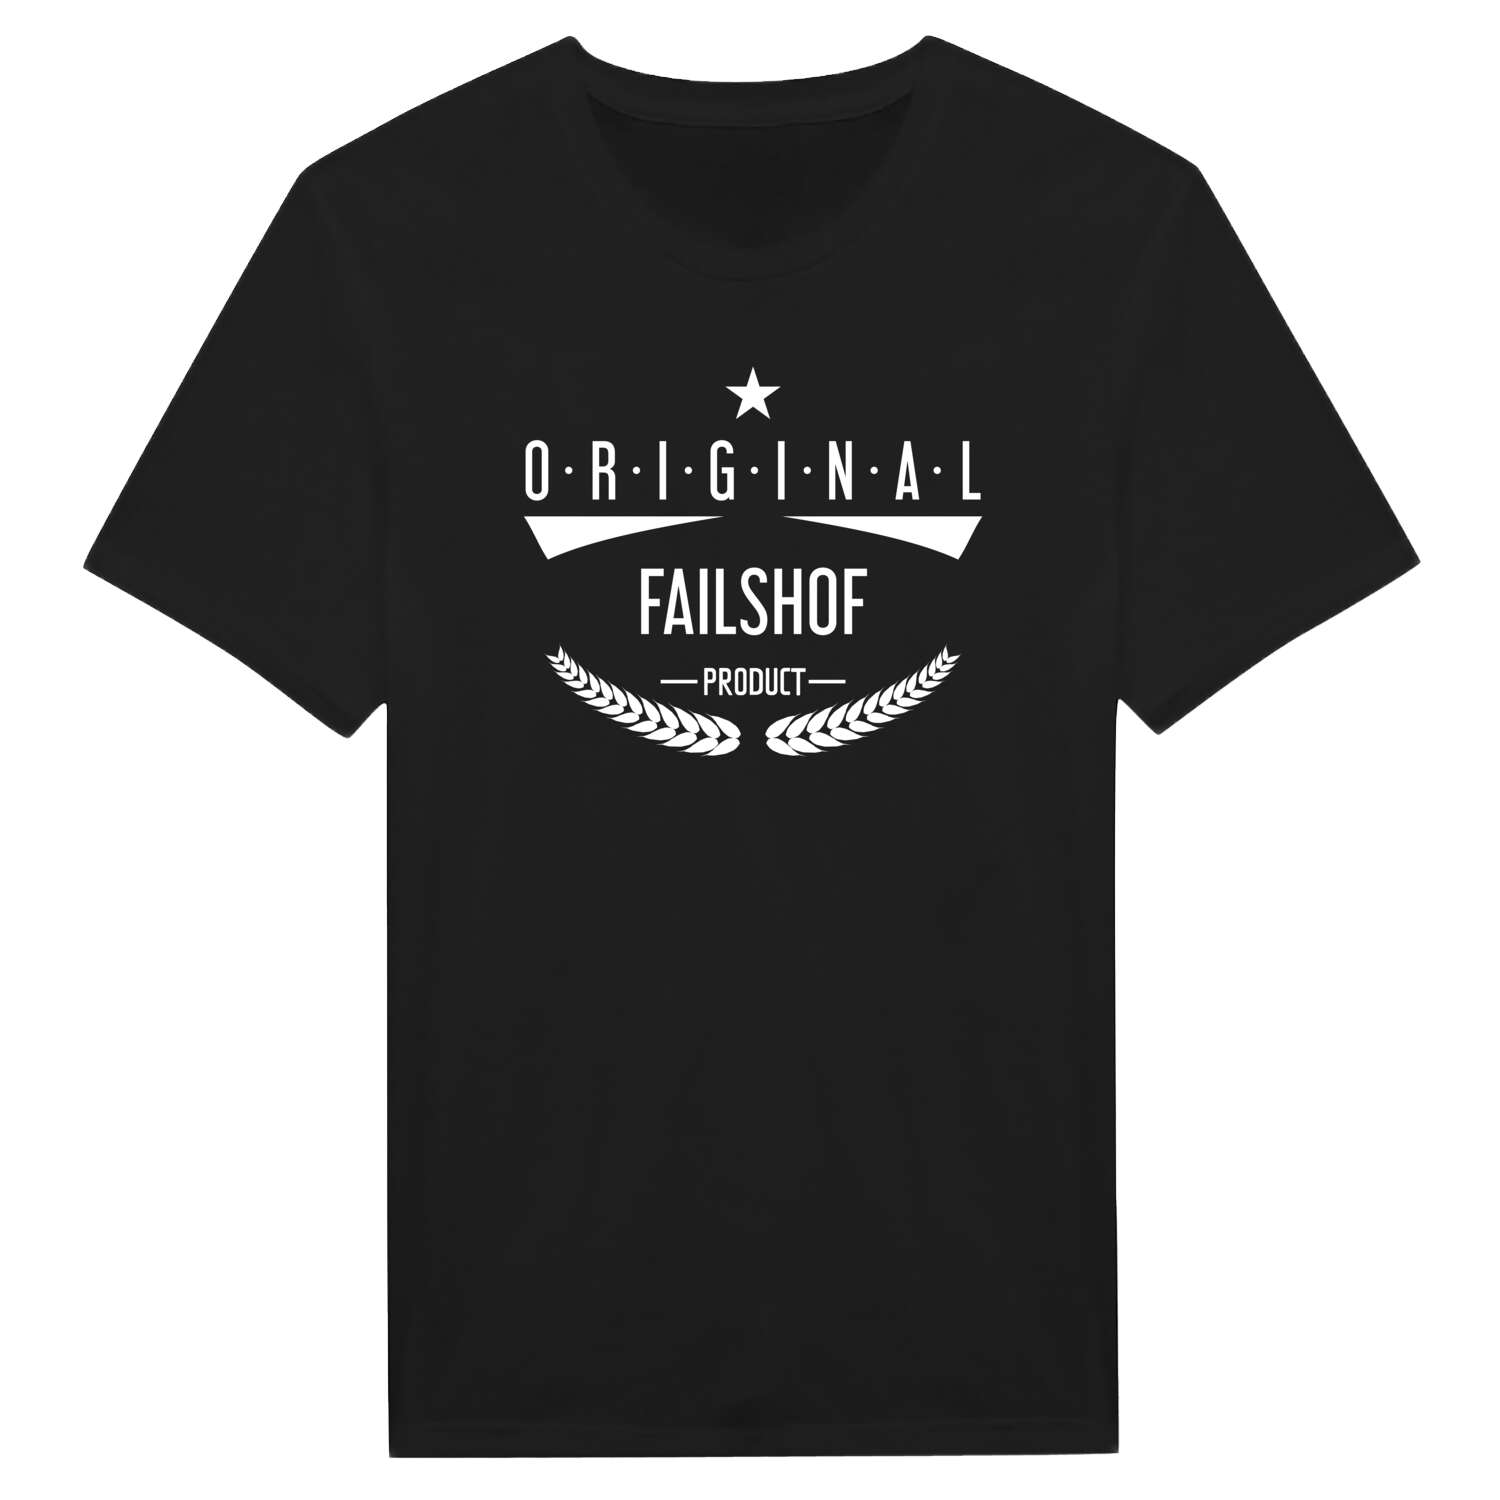 Failshof T-Shirt »Original Product«